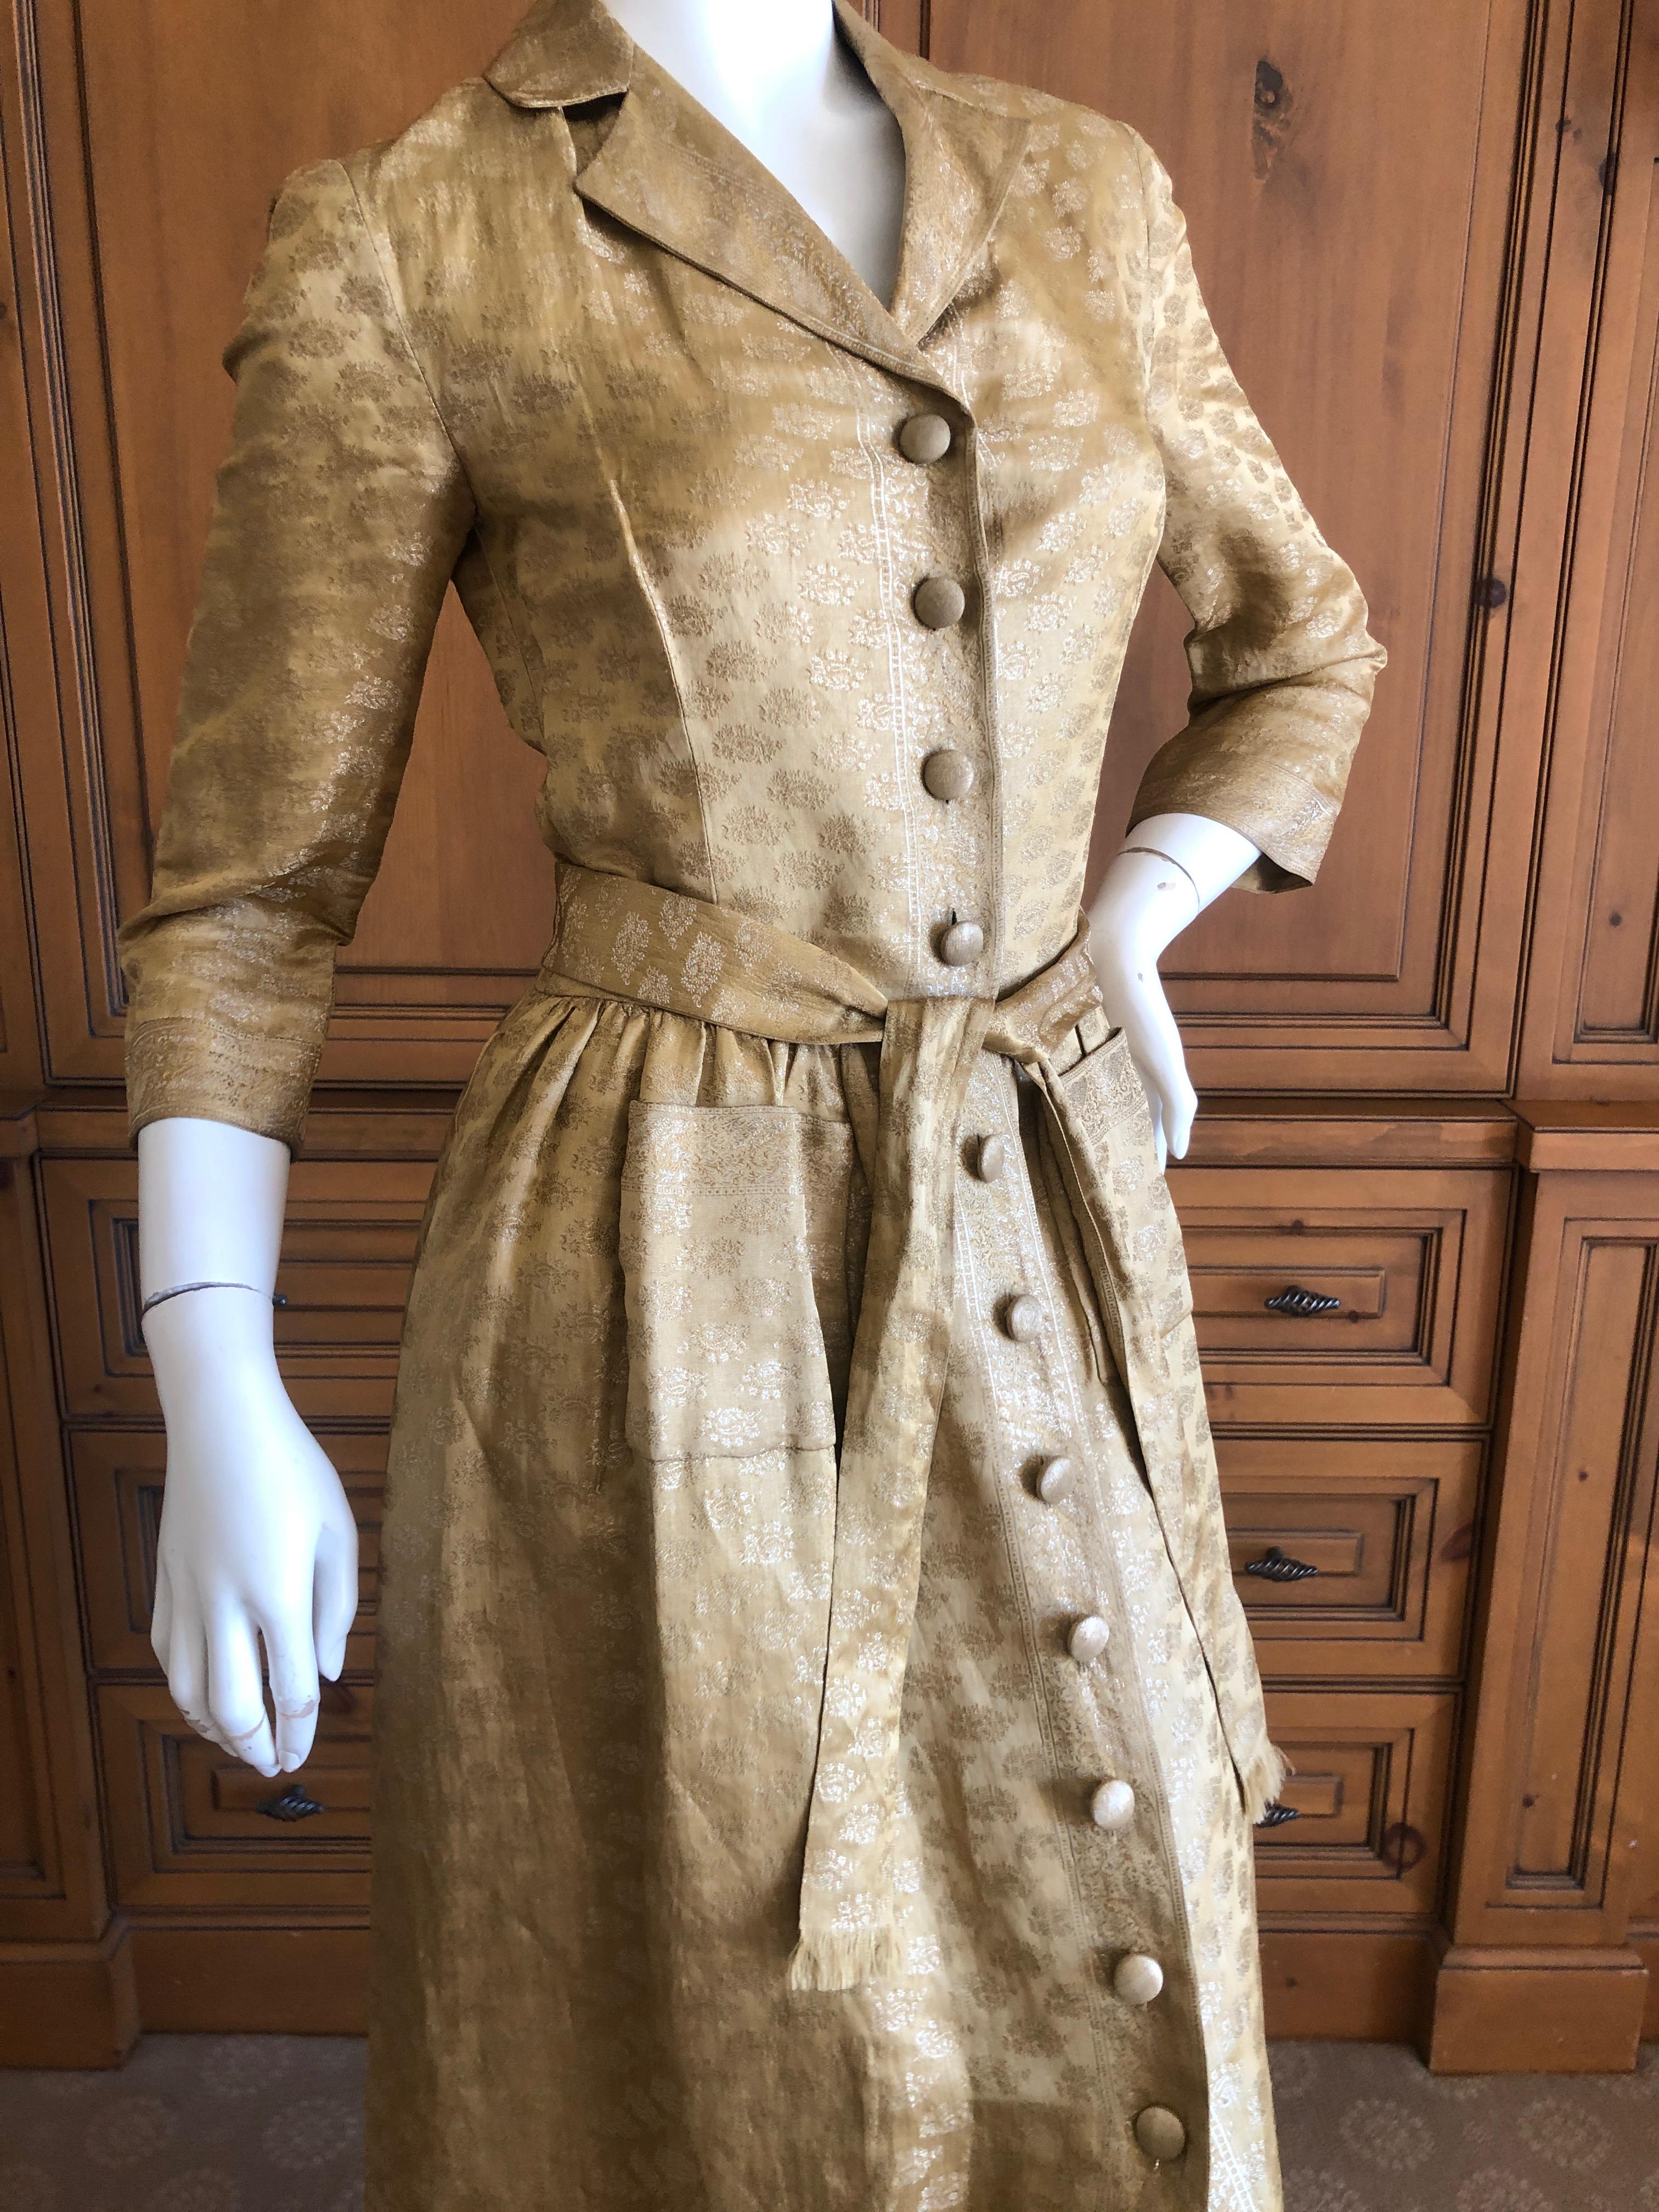 Oscar de la Renta Vintage Golden Brocade Dress as worn by CZ Guest to CFDA Award For Sale 1